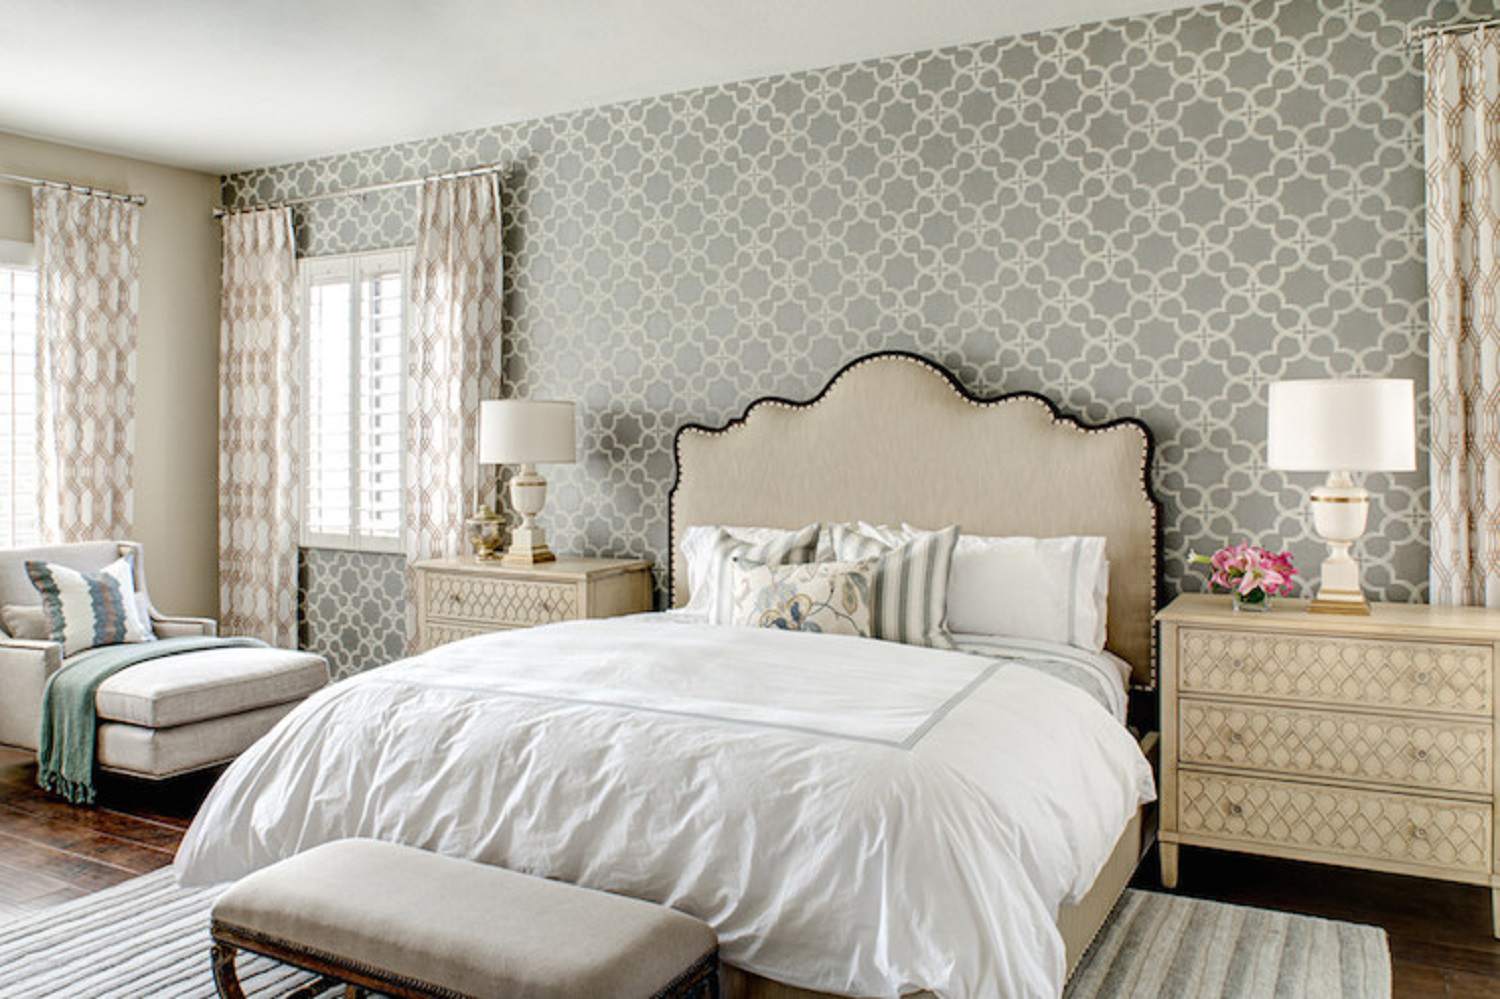 Schlafzimmer mit Tapeten, Vorhängen und Nachttischen in komplementären Mustern